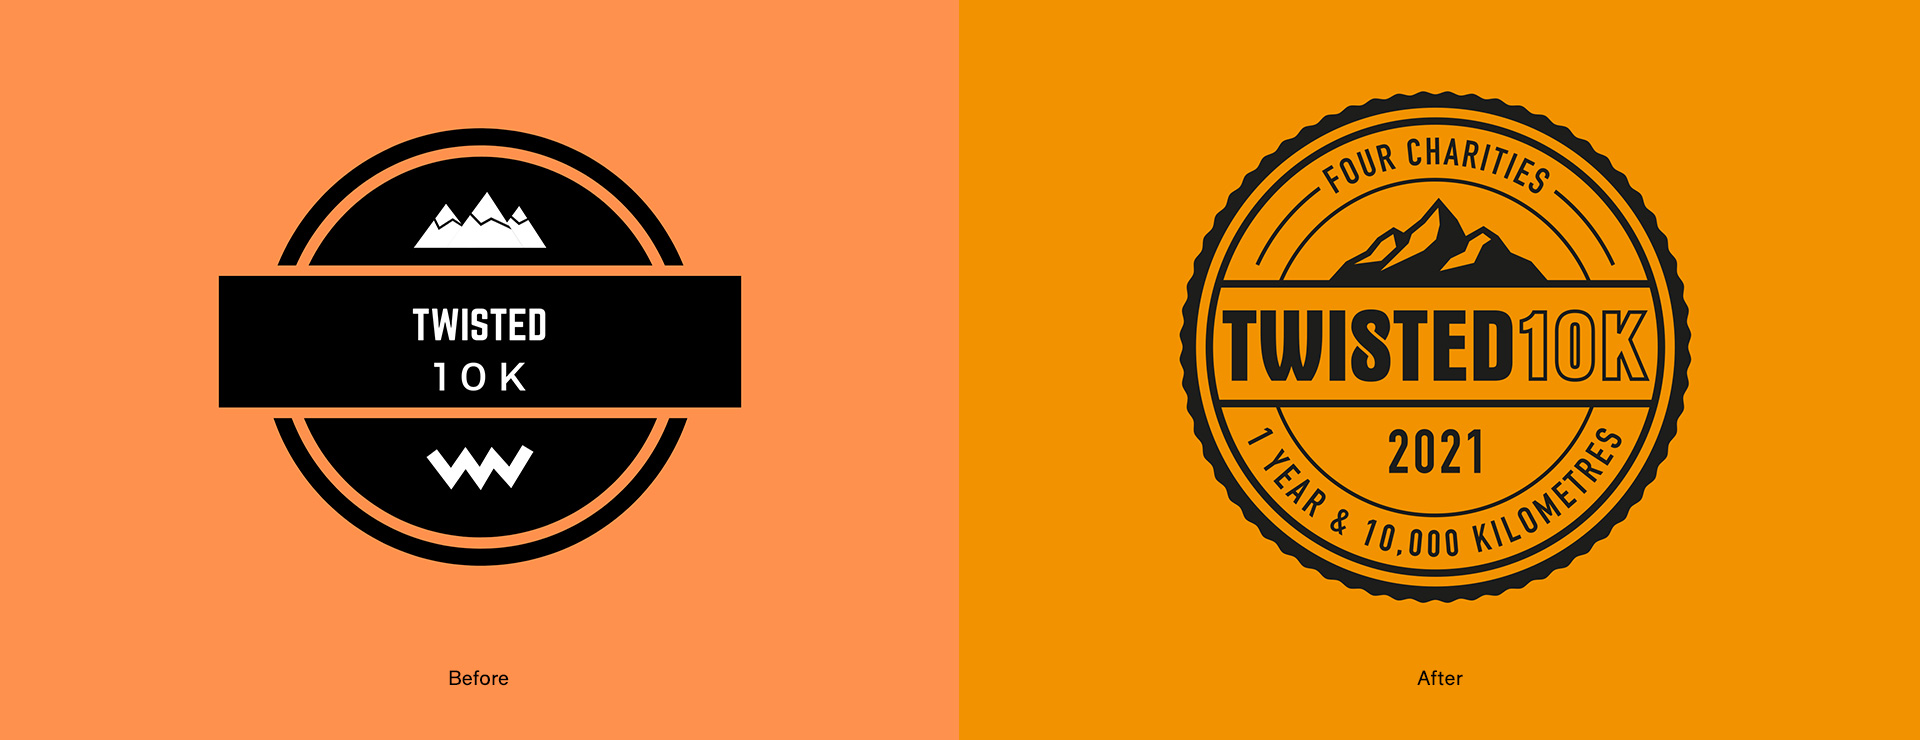 Twisted 10k logo development v2